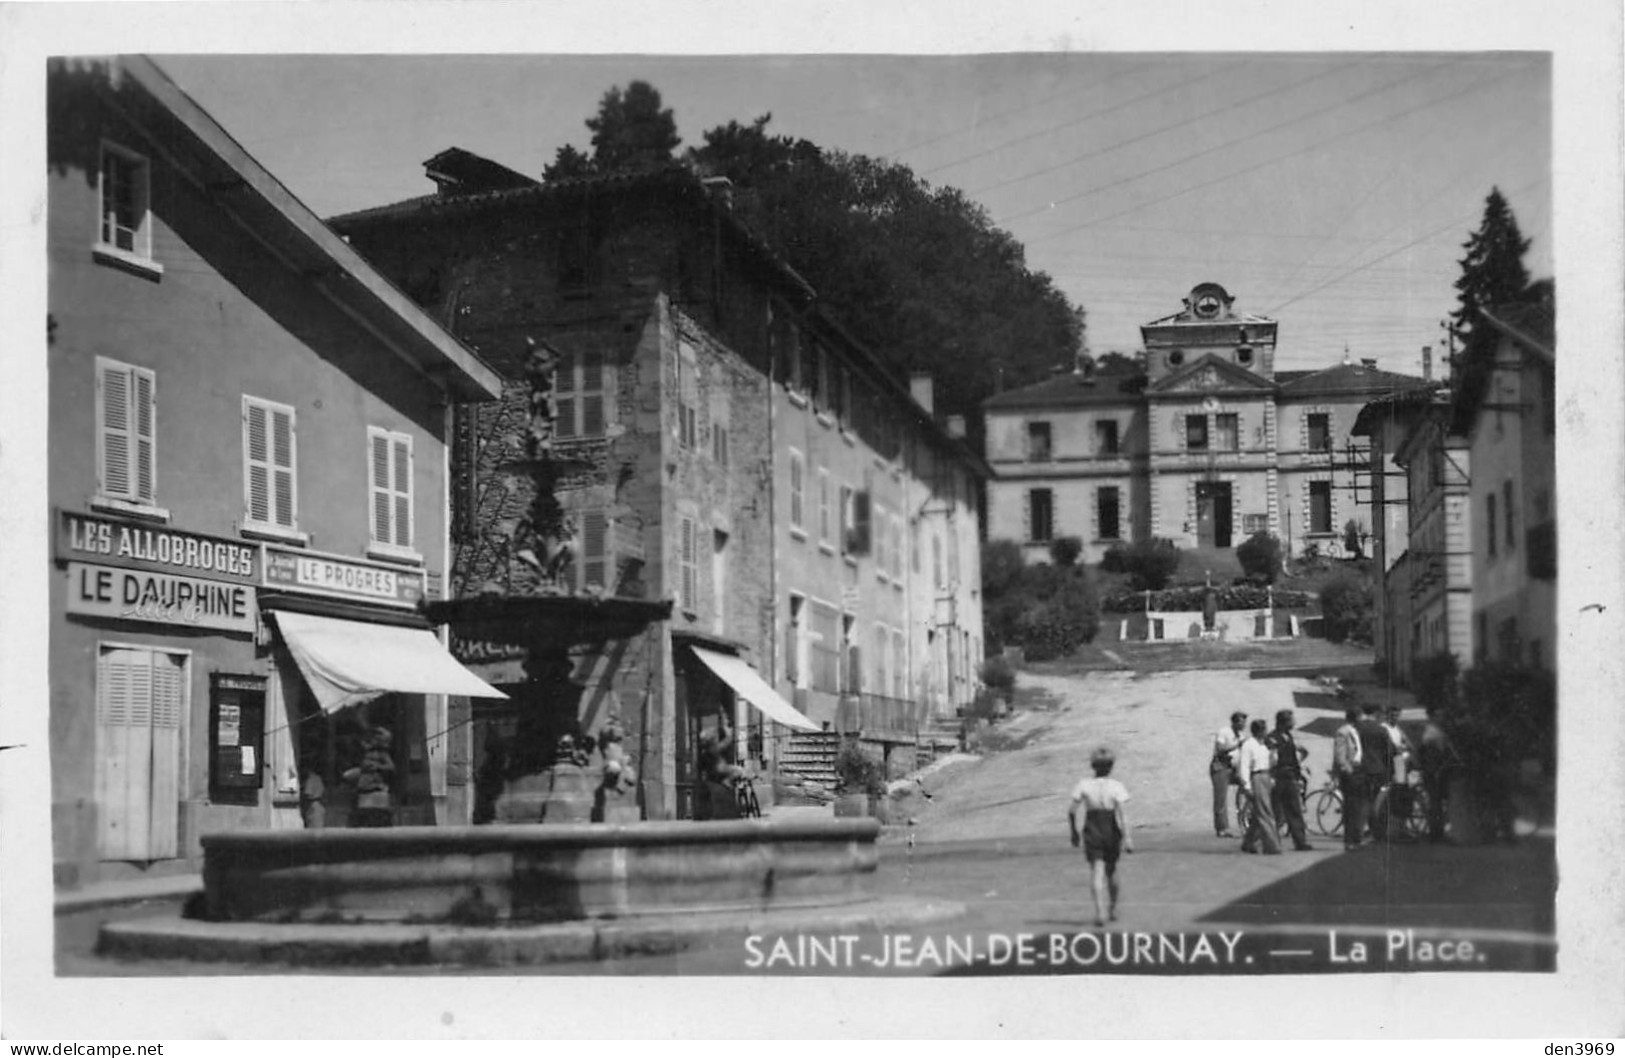 SAINT-JEAN-de-BOURNAY (Isère) - La Place - Fontaine, Tabac-Journaux - Voyagé 1948 (2 Scans) Lyon 44 Rue Challemel Lacour - Saint-Jean-de-Bournay